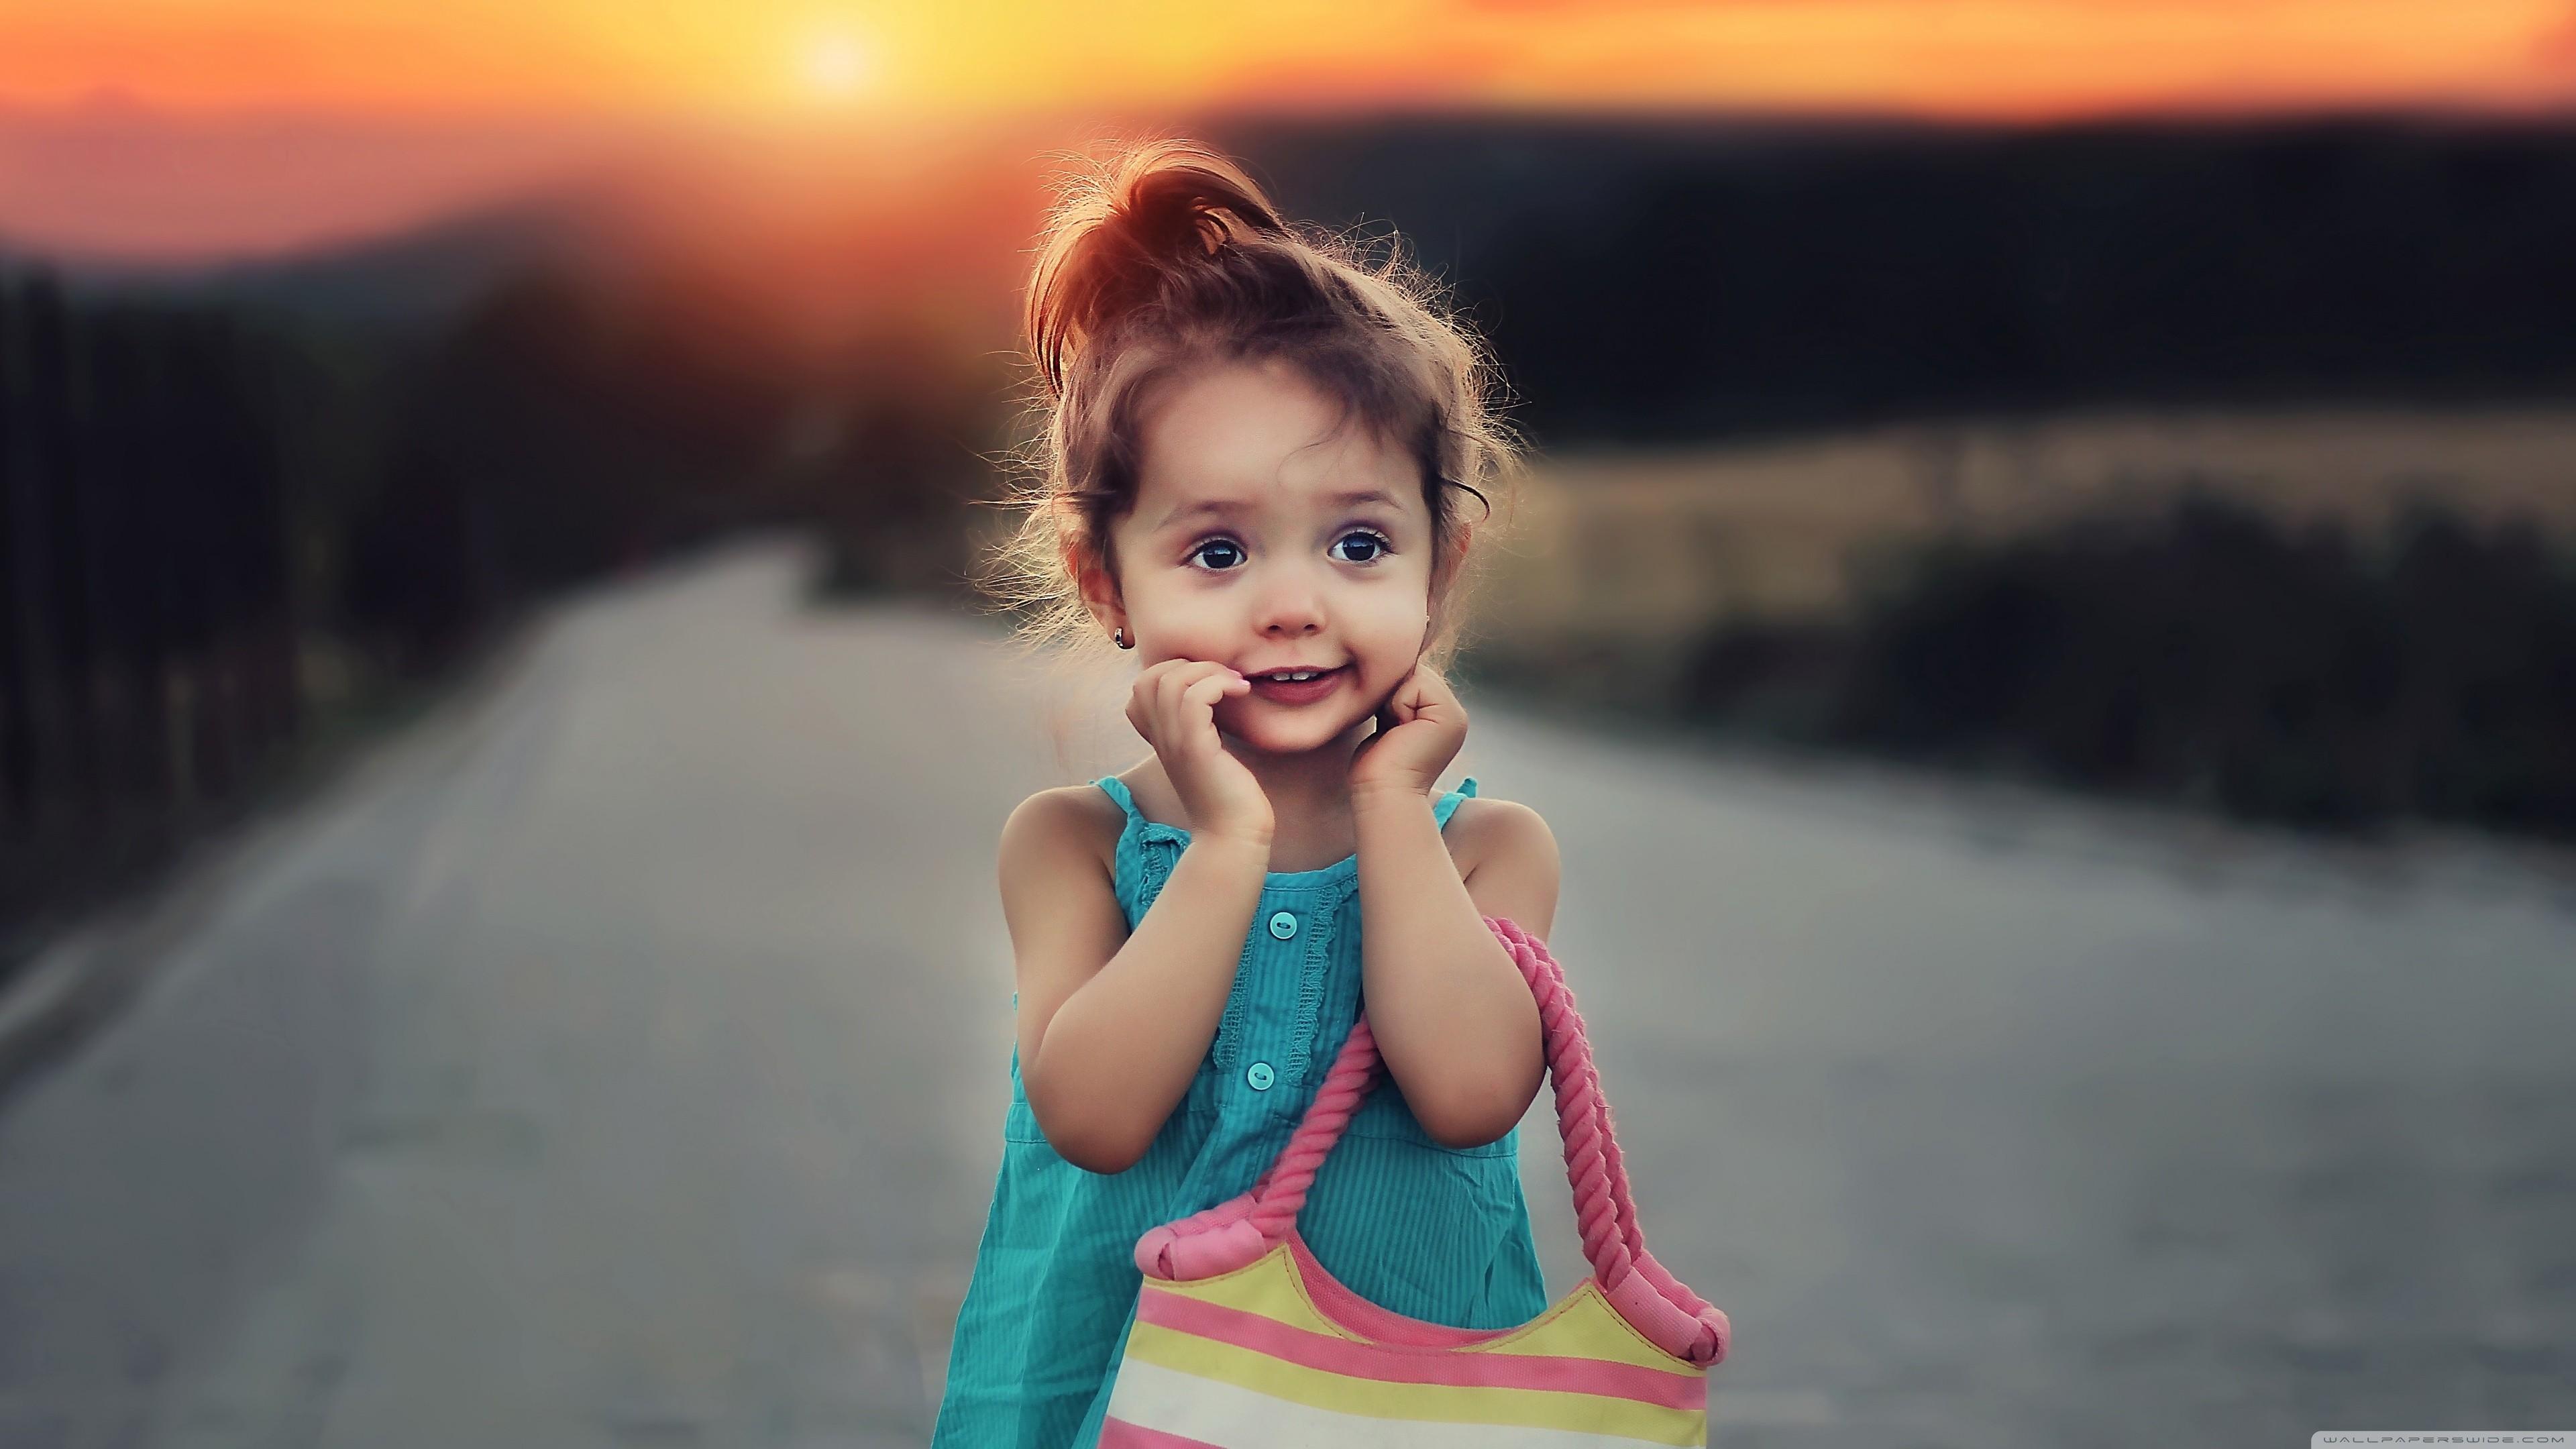 Adorable Cute Baby Girl Photo Wallpaper 3840x2160